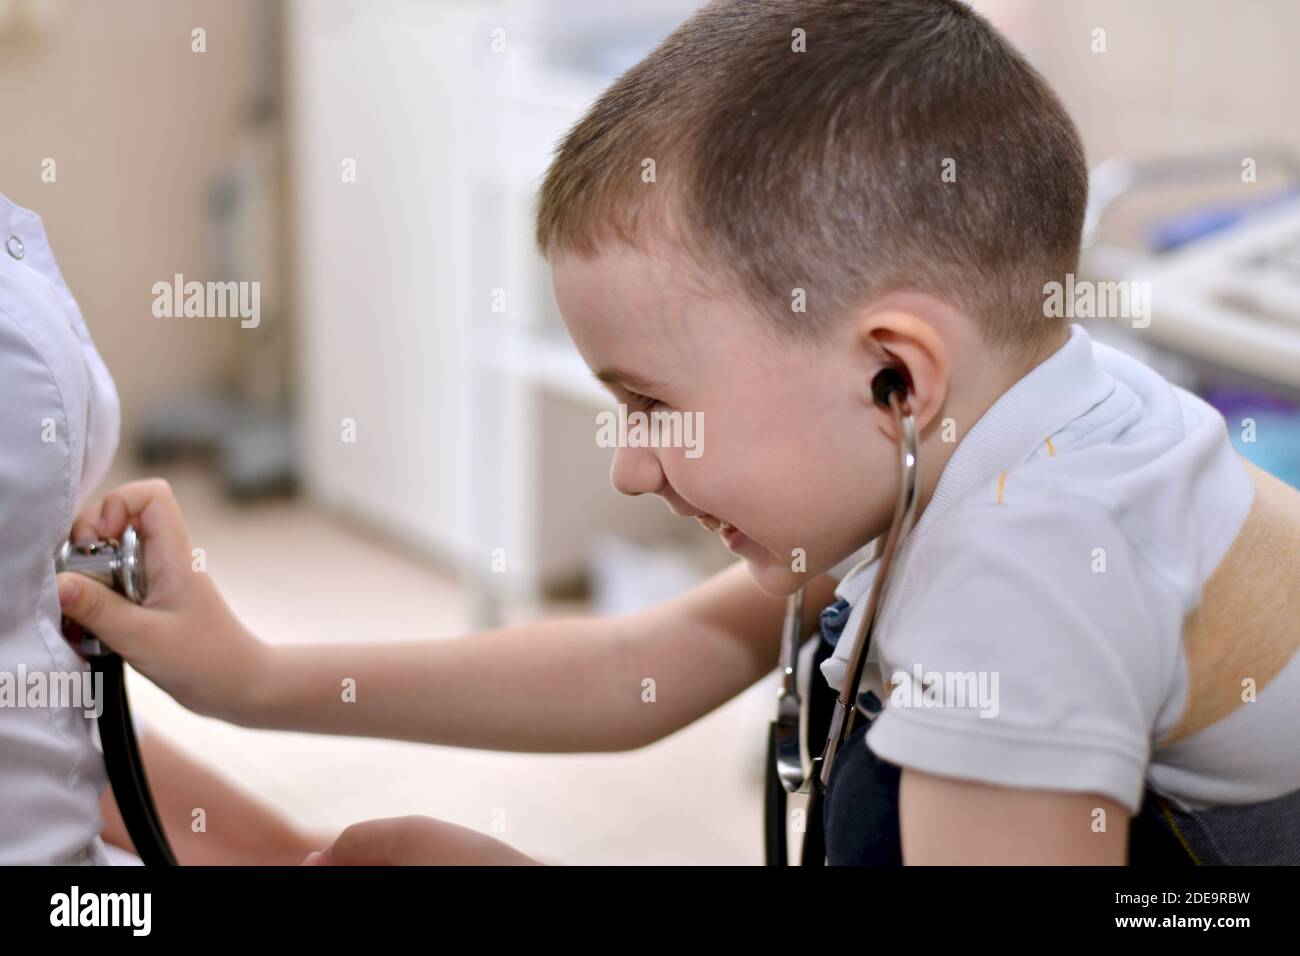 Il bambino ride in imbarazzo con le cuffie stetoscopio nelle orecchie, e applica la membrana audio testa al cappotto bianco. Comunicazione divertente Foto Stock